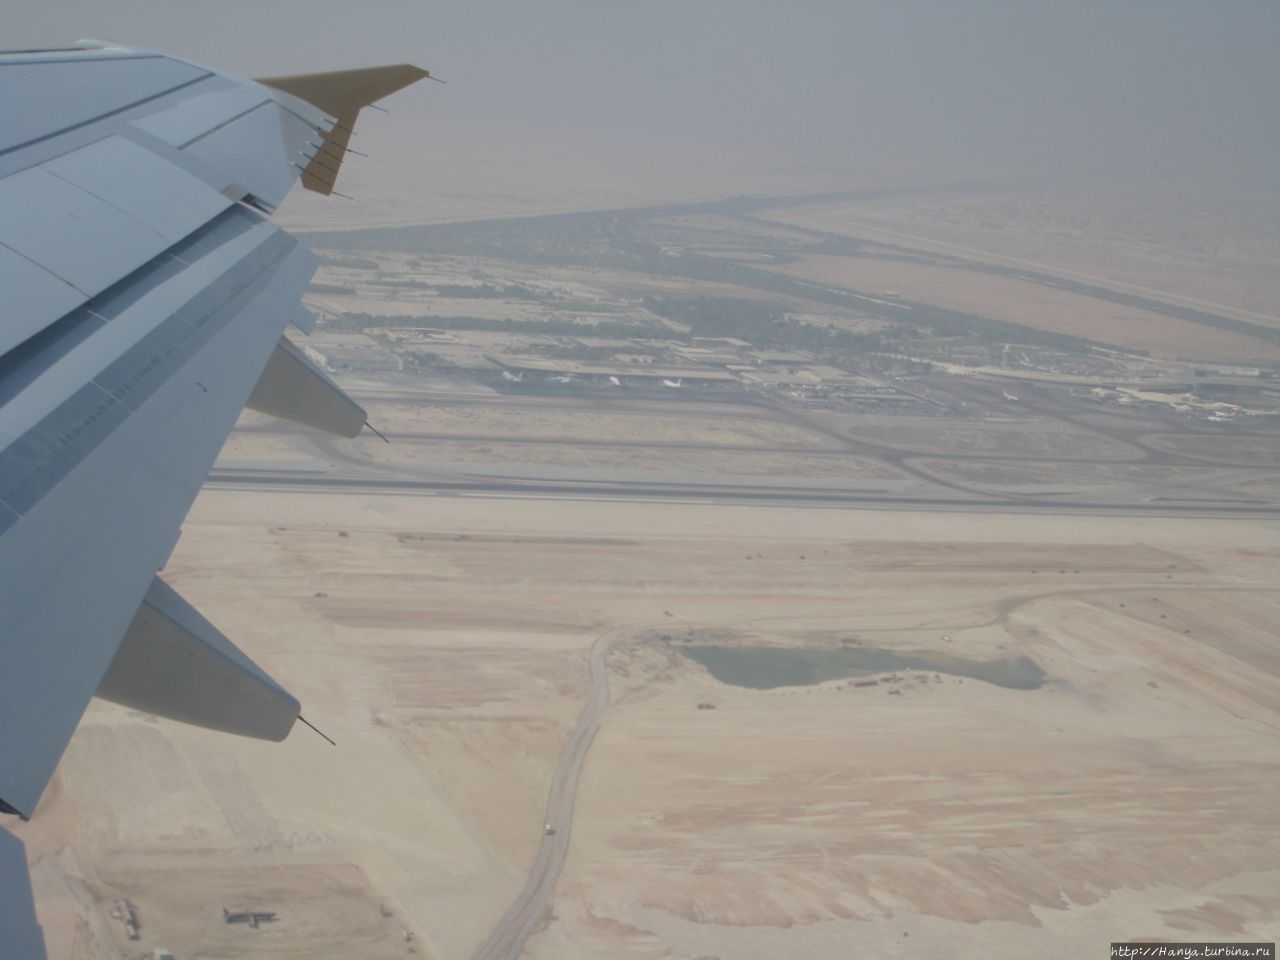 Аэропорт Абу-Даби Абу-Даби, ОАЭ